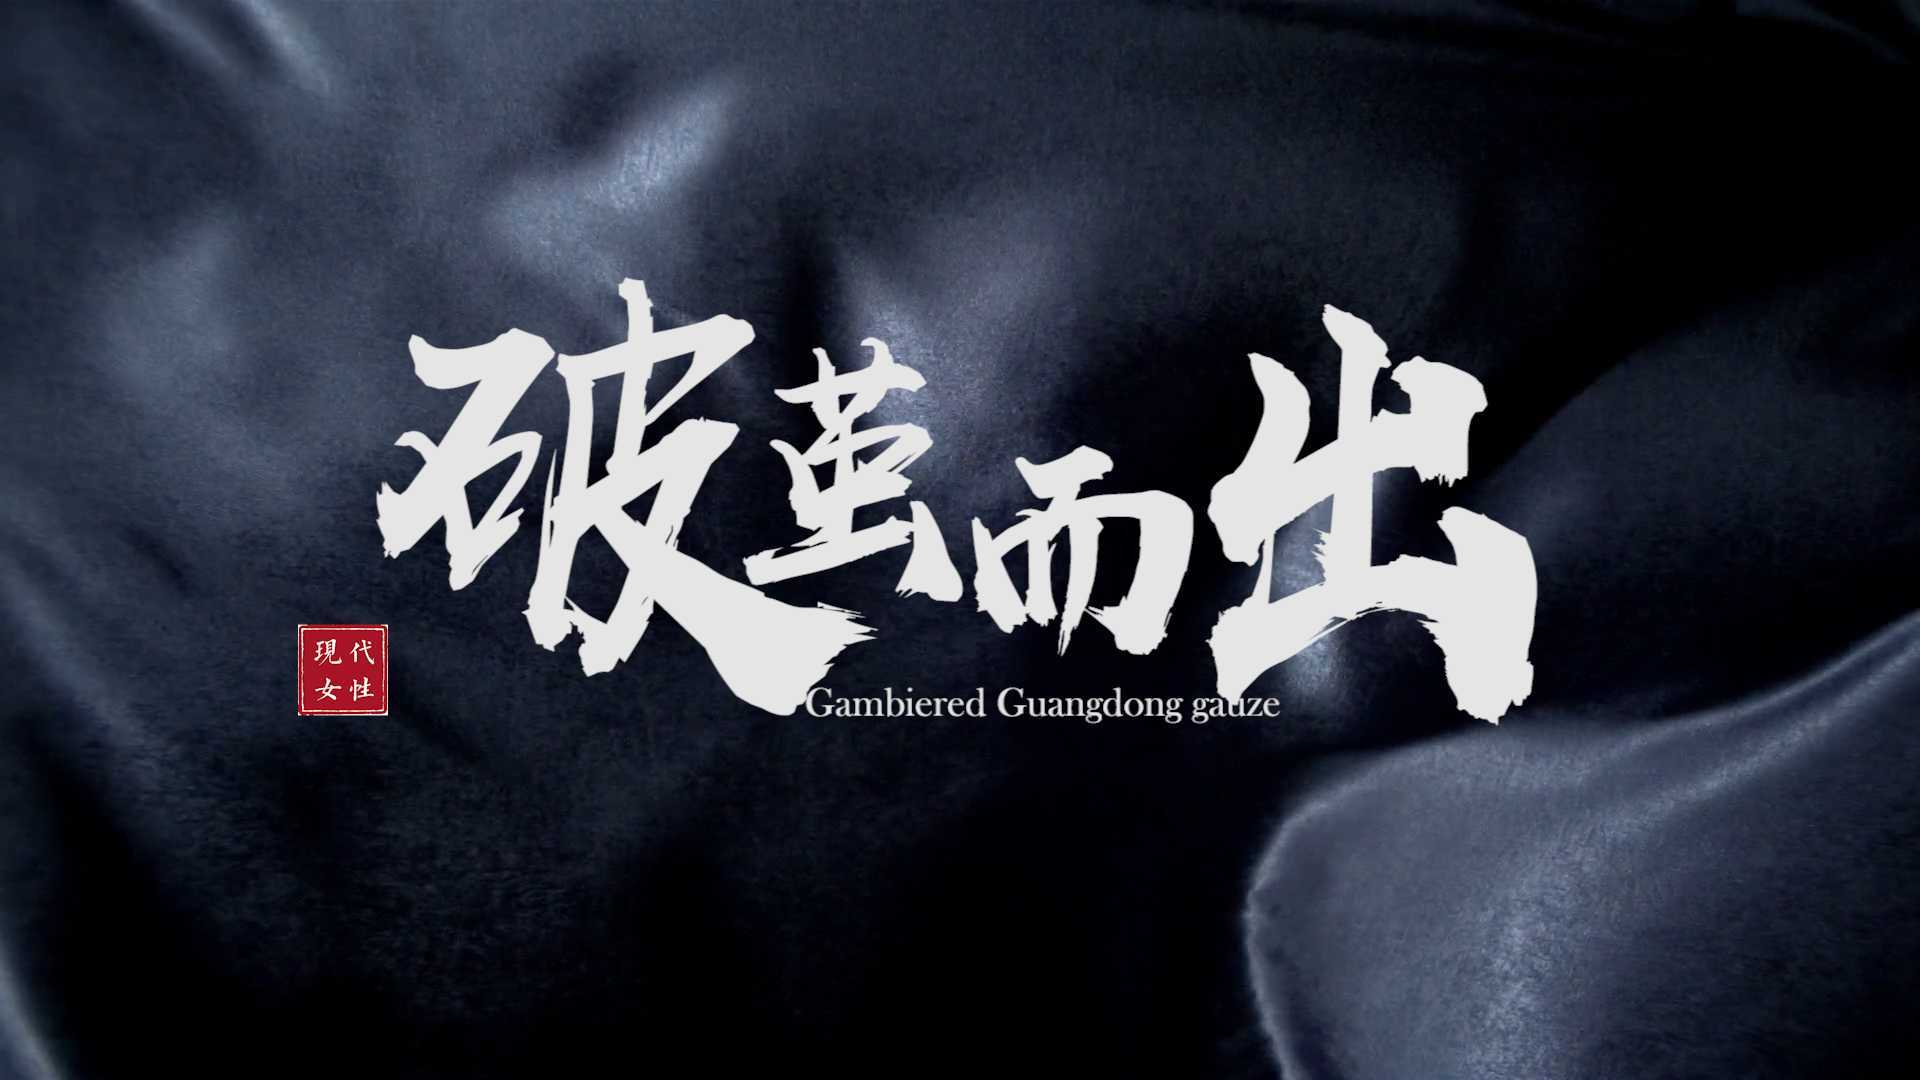 华南农业大学艺术学院毕设 剧情短片《破茧而出》